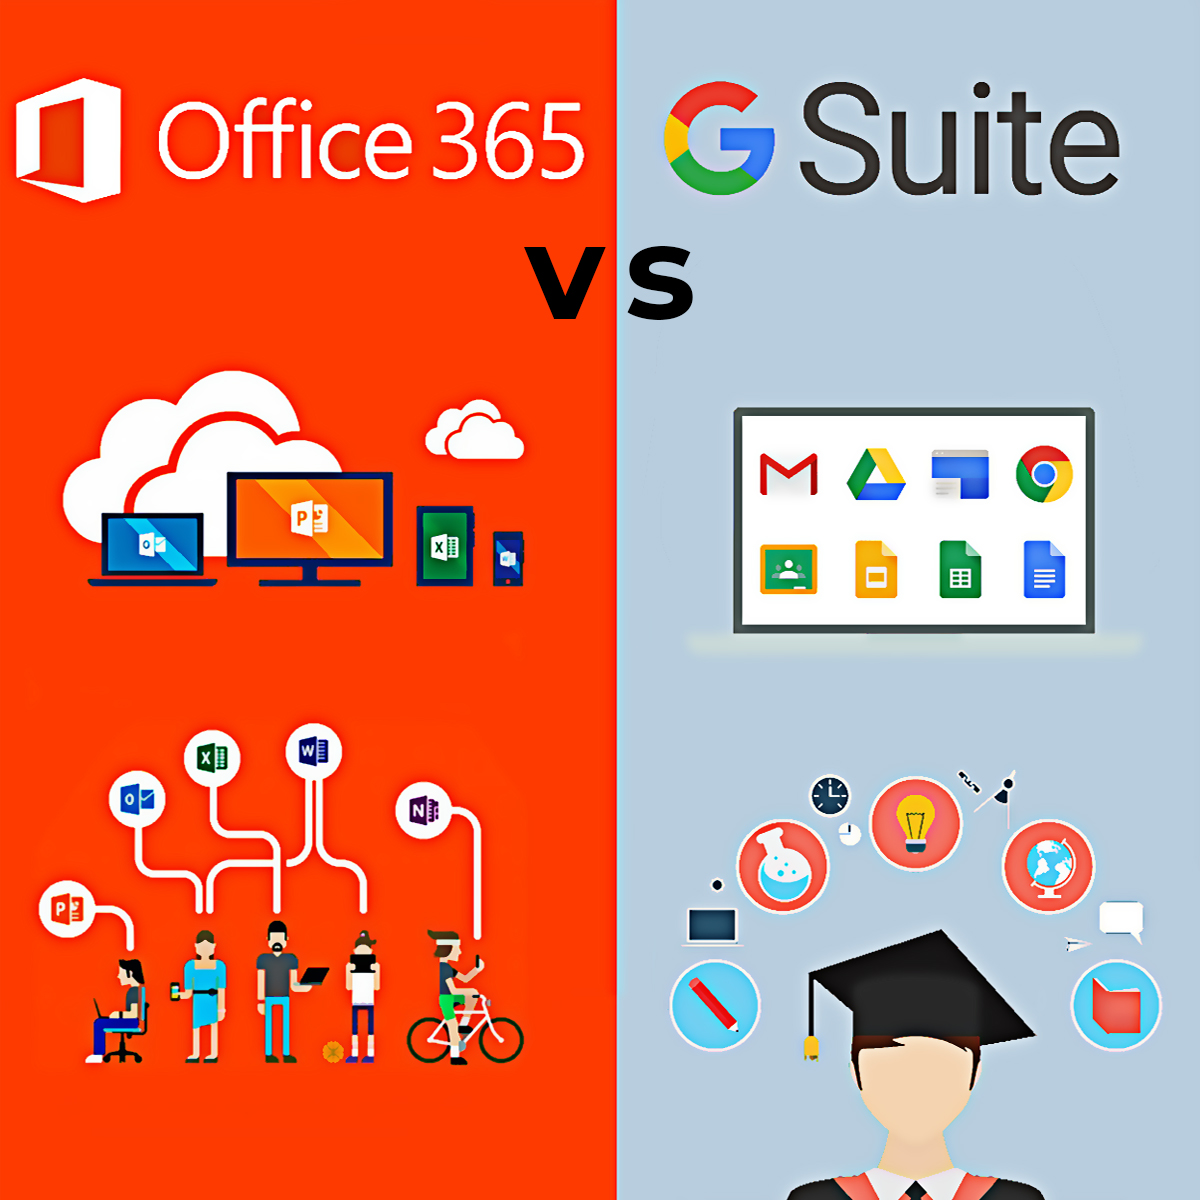 G Suite Vs Office 365